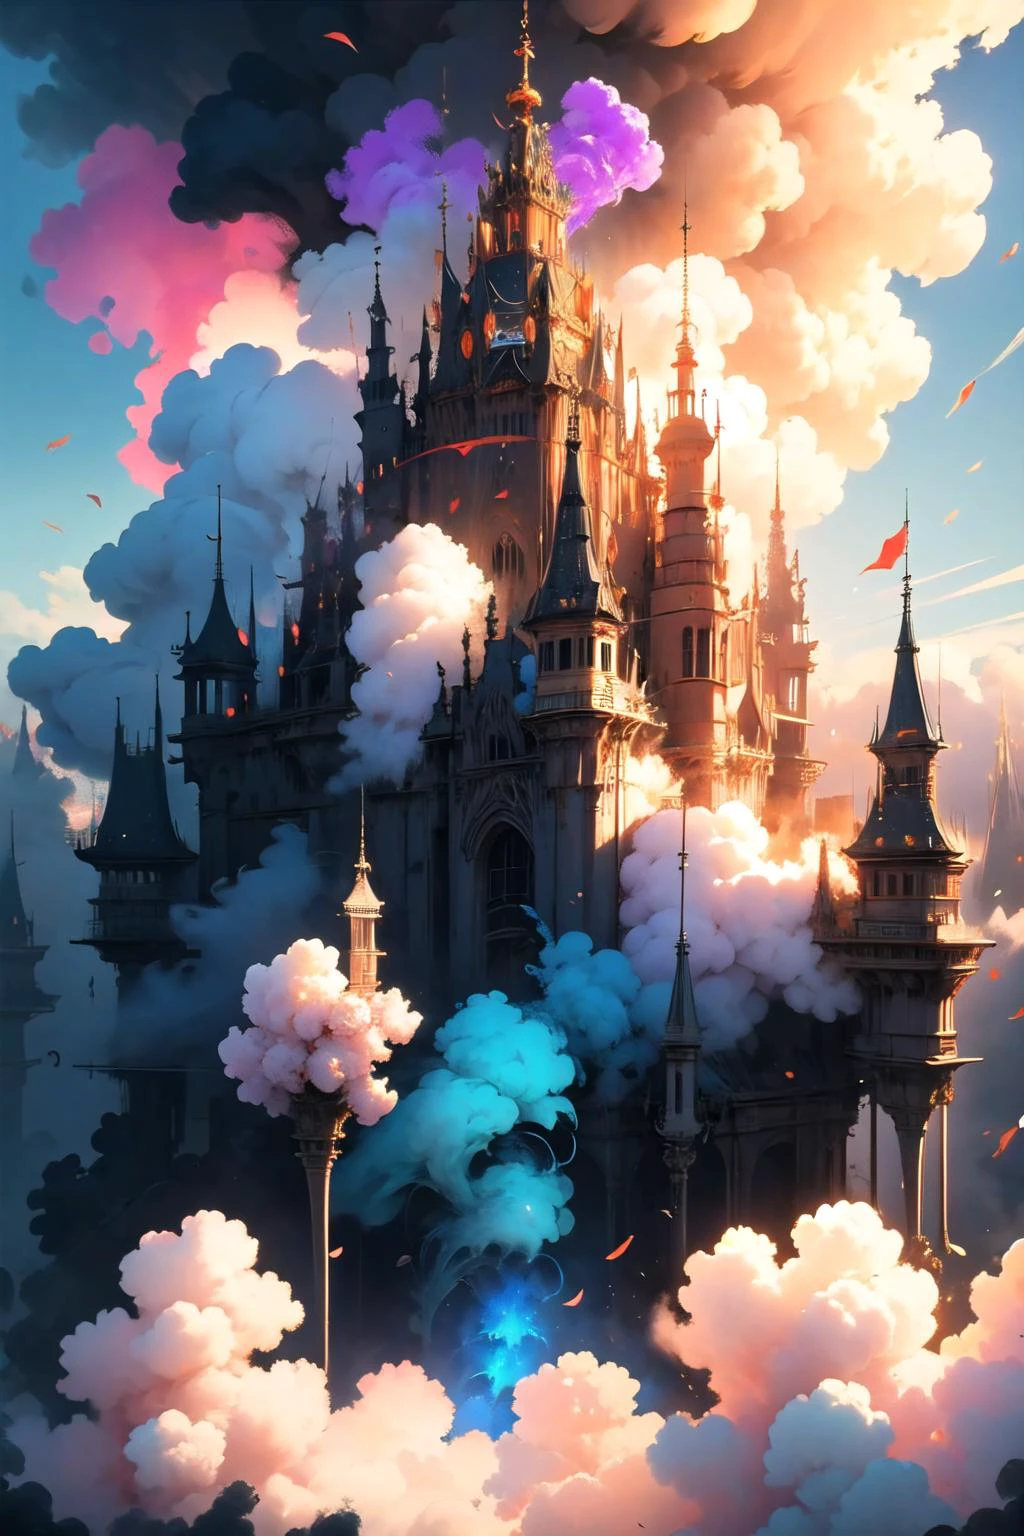 豐富多彩的_煙霧, 抽煙, 煙霧, 抽煙 trail, blue 抽煙,
Top view of hyper 詳細的 supermassive royal castle, 來自黑暗幻想, 電腦圖形學, 深度聚焦, 體積照明, photo實際的, 實際的, 詳細的, hyper實際的, 複雜的, 複雜的 maximalistic,